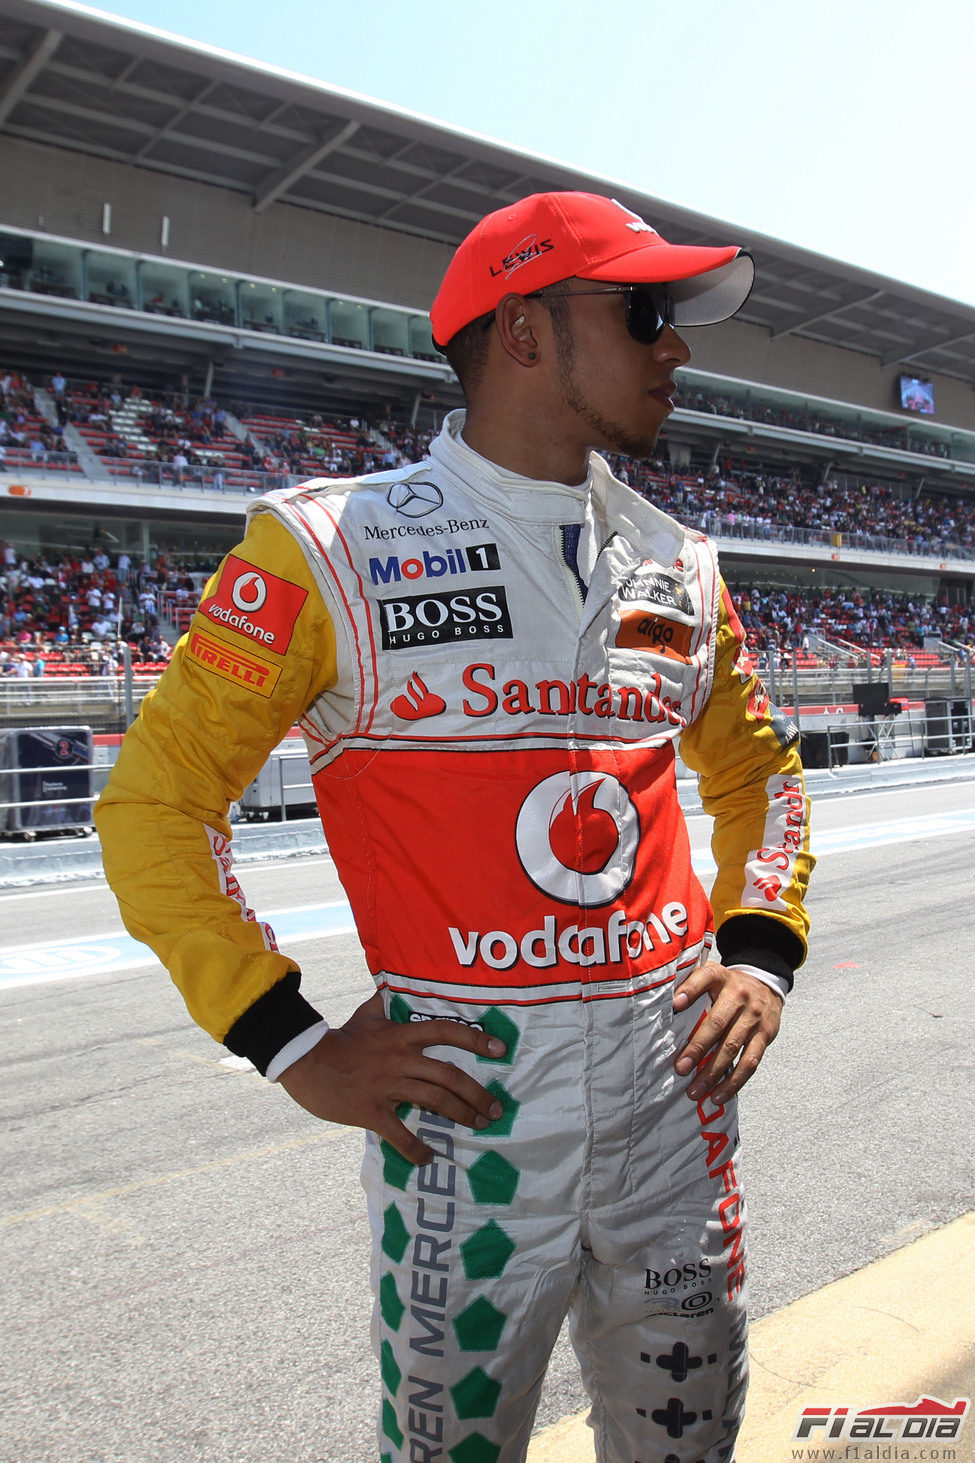 El "espectacular" mono de Lewis Hamilton en el GP de España 2011